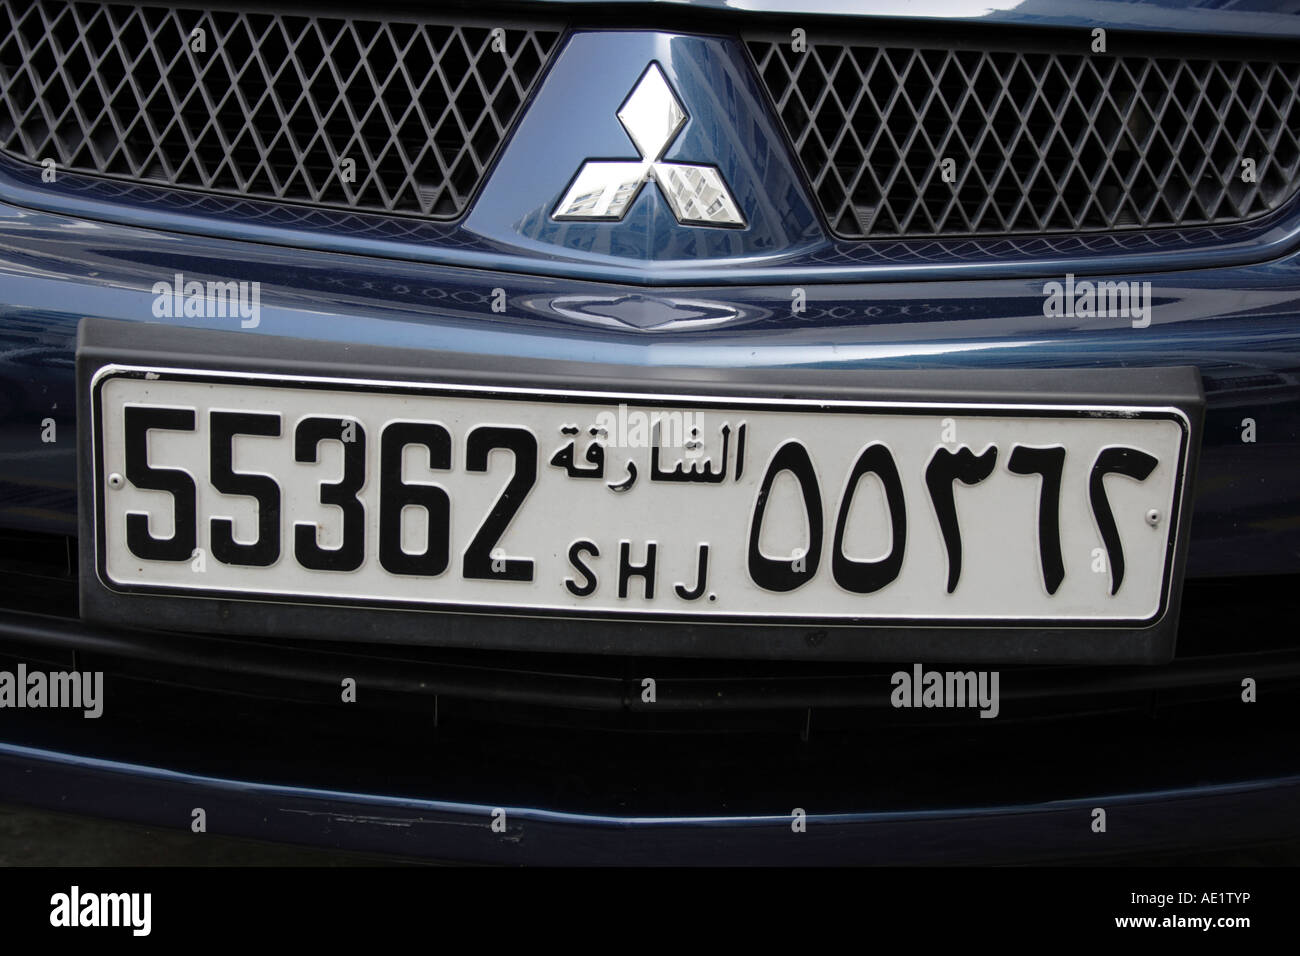 Vorderseite des Mitsubishi mit Kfz-Kennzeichen von Sharjah in Dubai, Vereinigte Arabische Emirate. Foto: Willy Matheisl Stockfoto